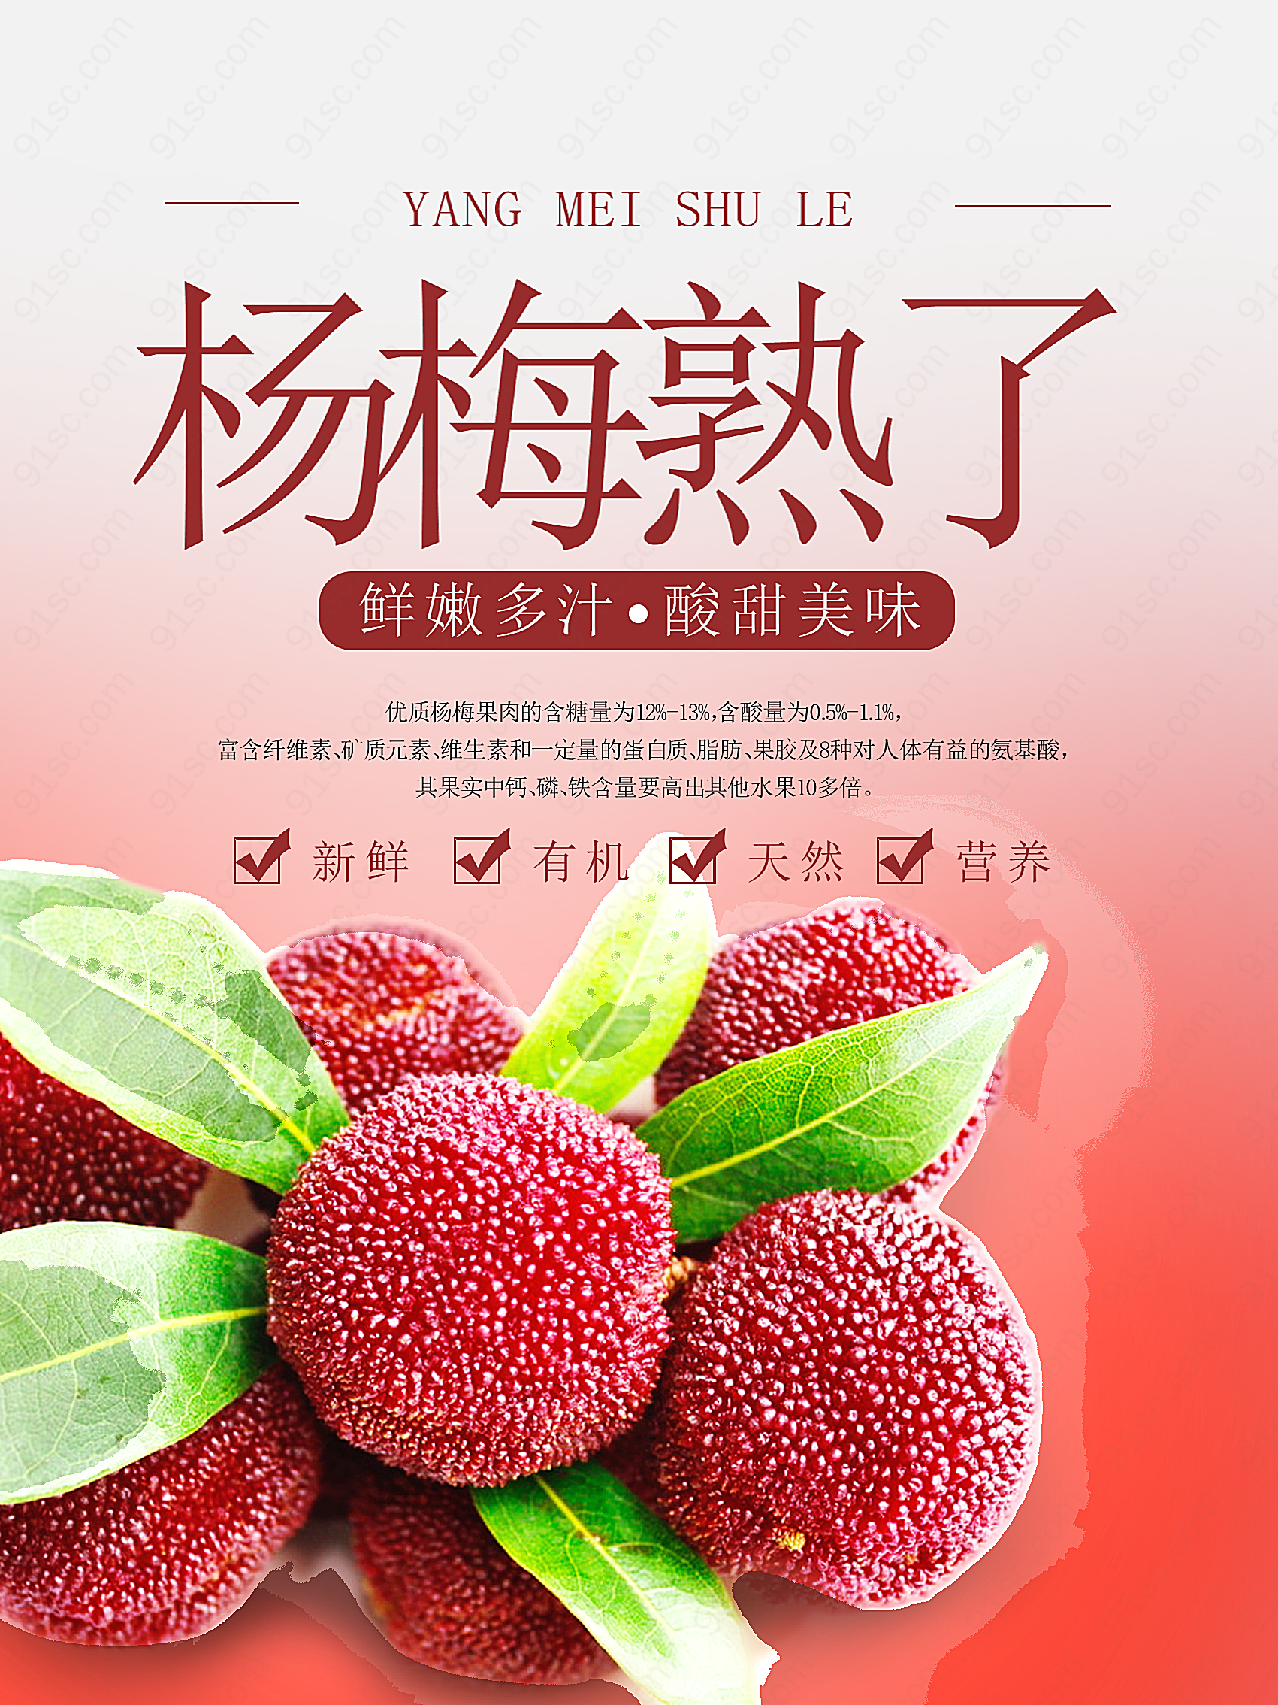 新鲜杨梅水果海报广告设计